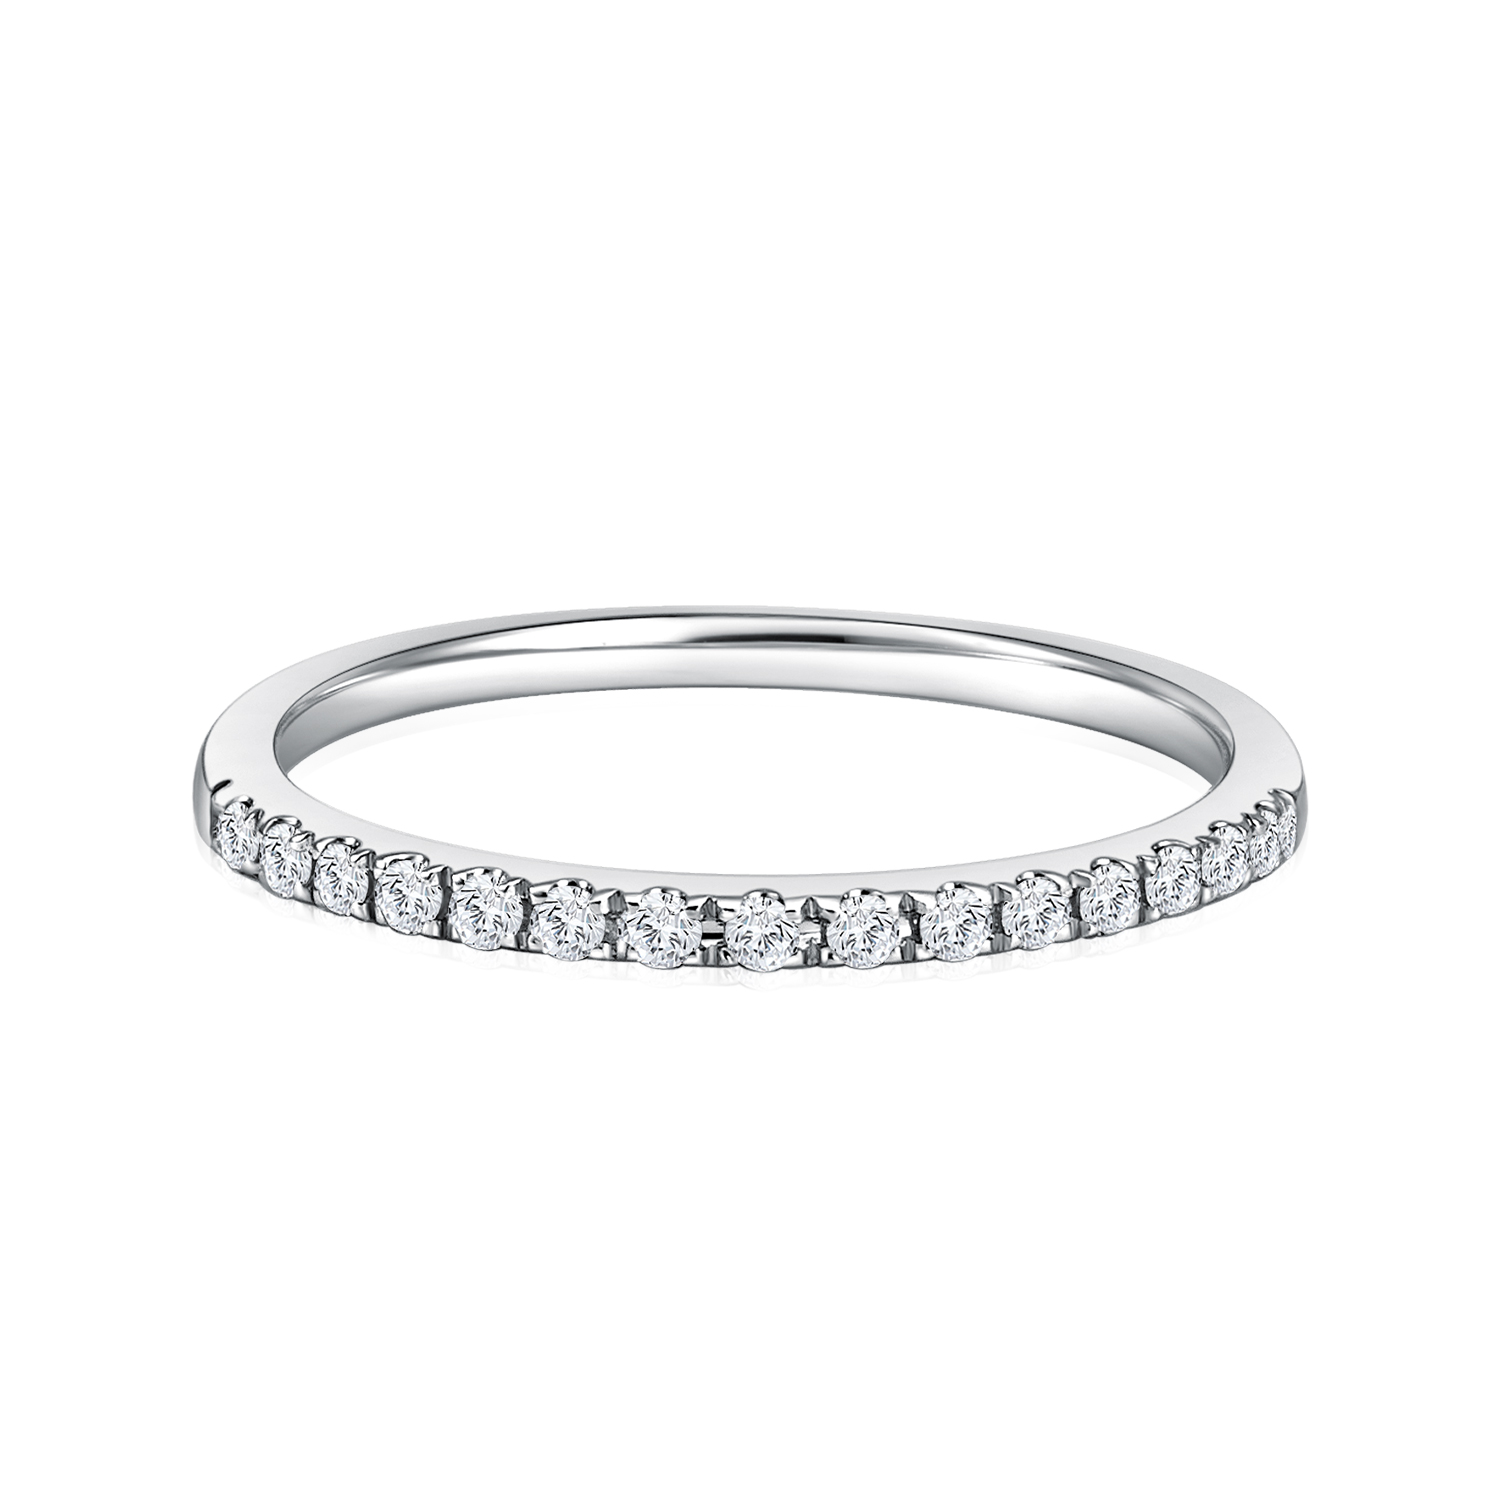 Starry Evon White Gold Diamond Ring